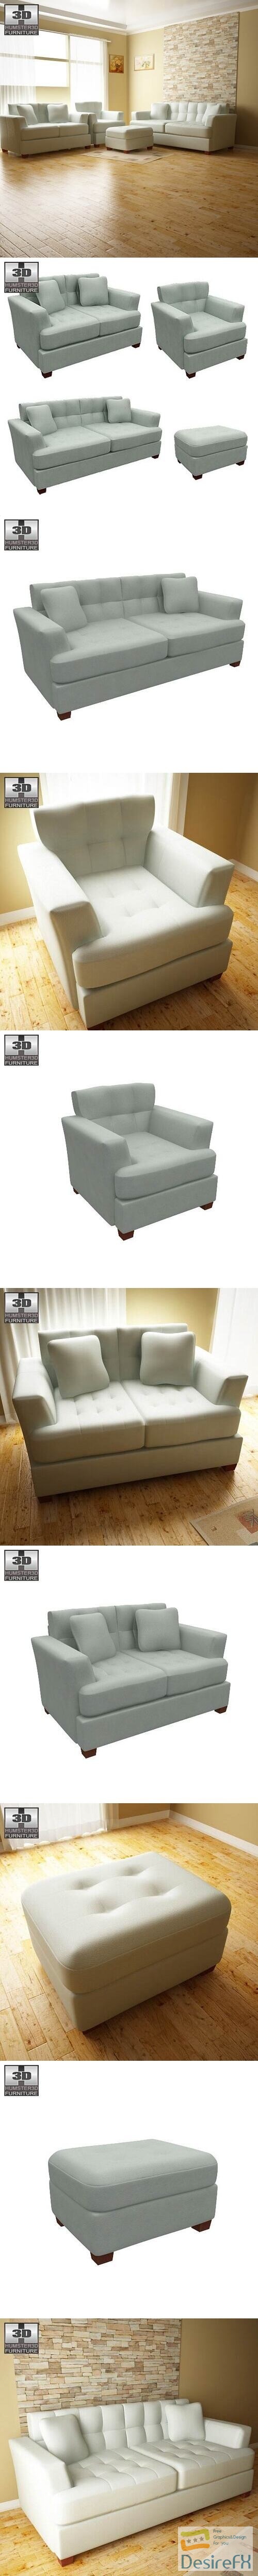 Ashley Zia - Spa Living Room Set 3D Model